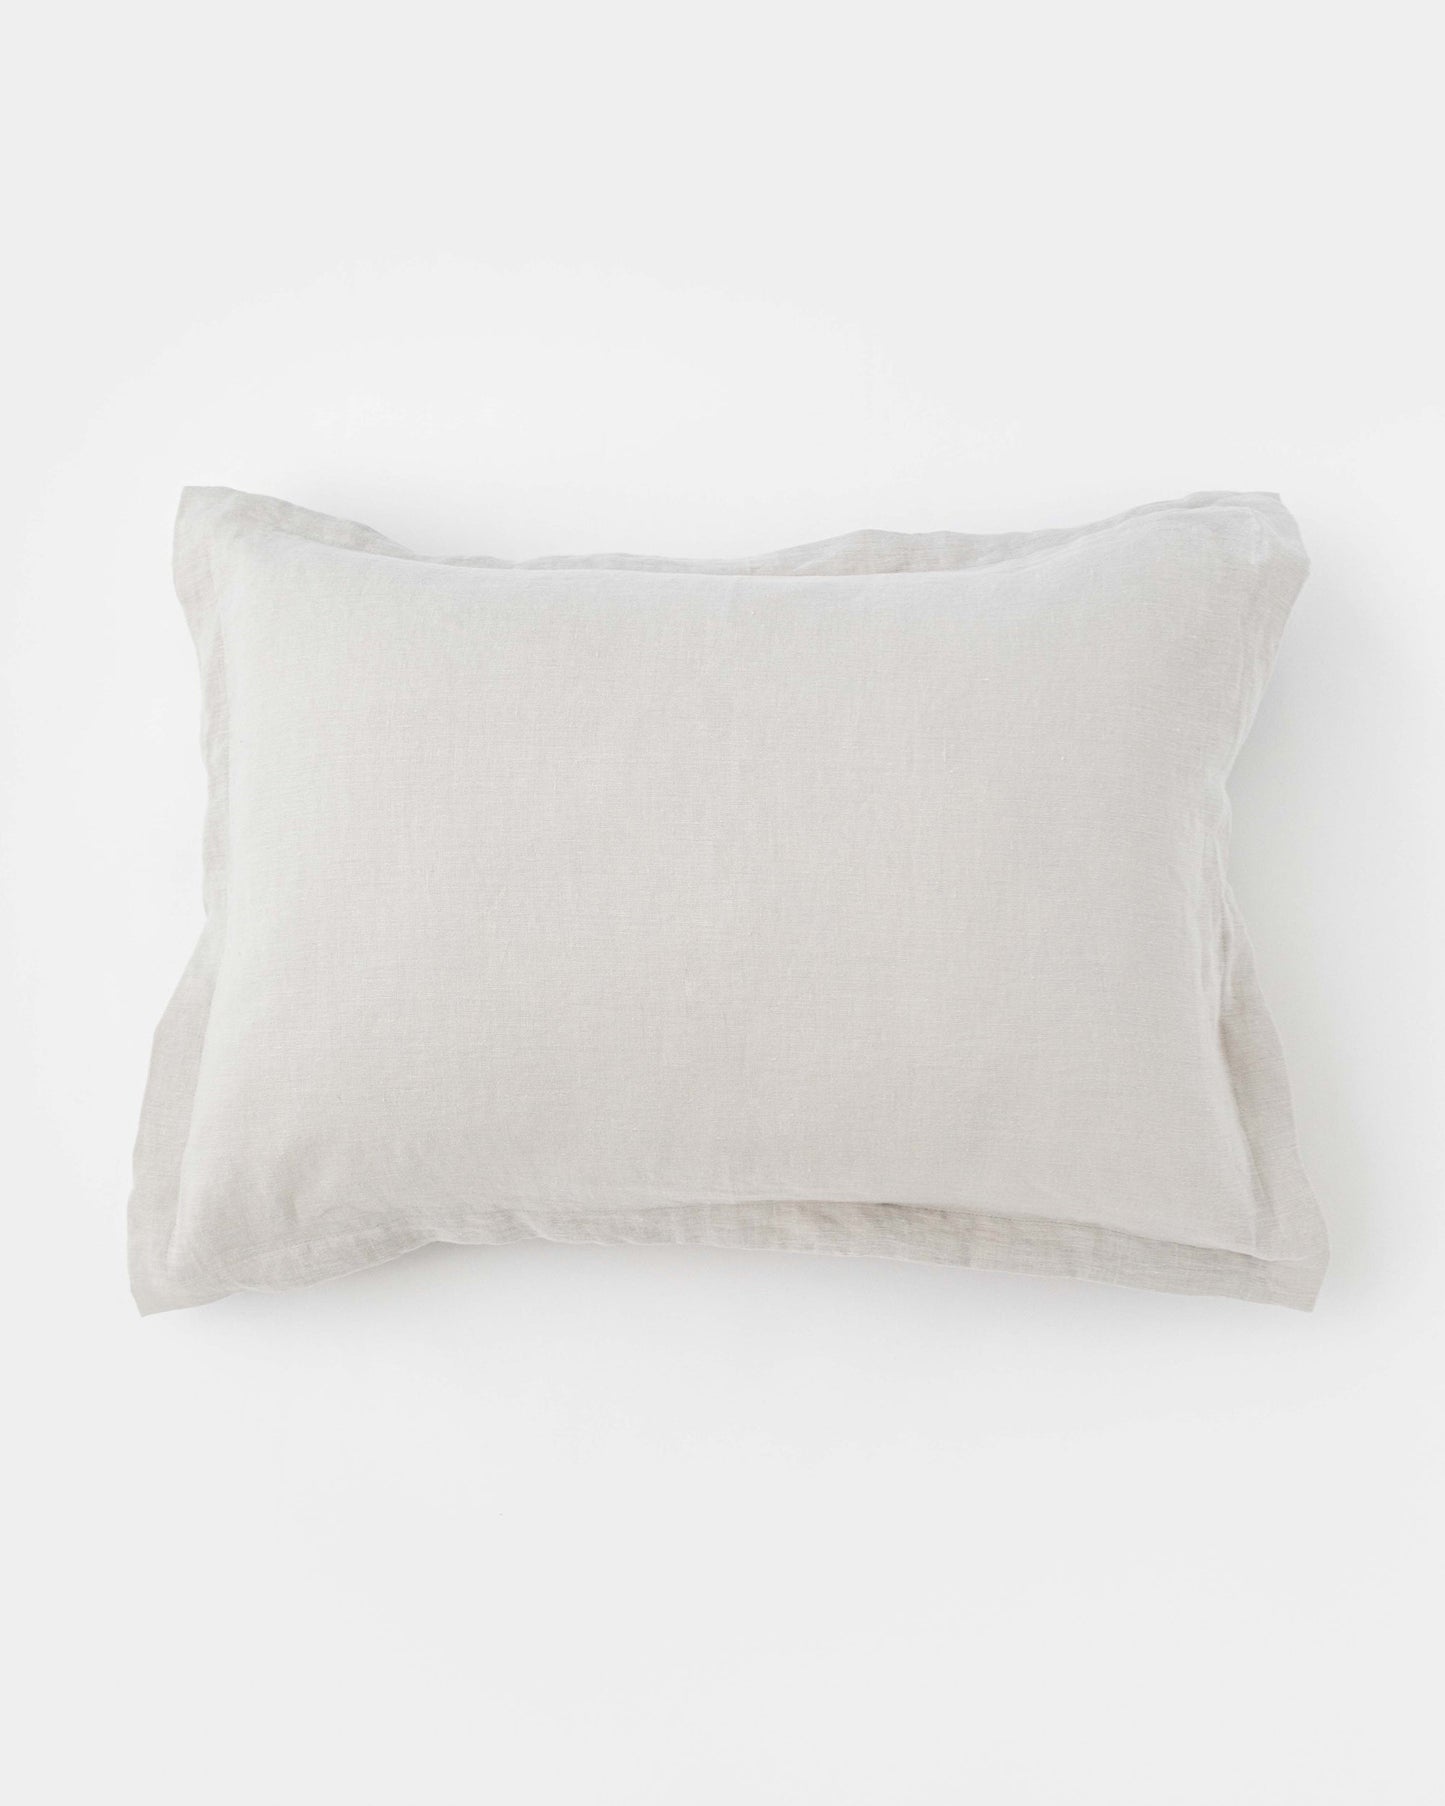 Linen pillow sham in Light gray - MagicLinen